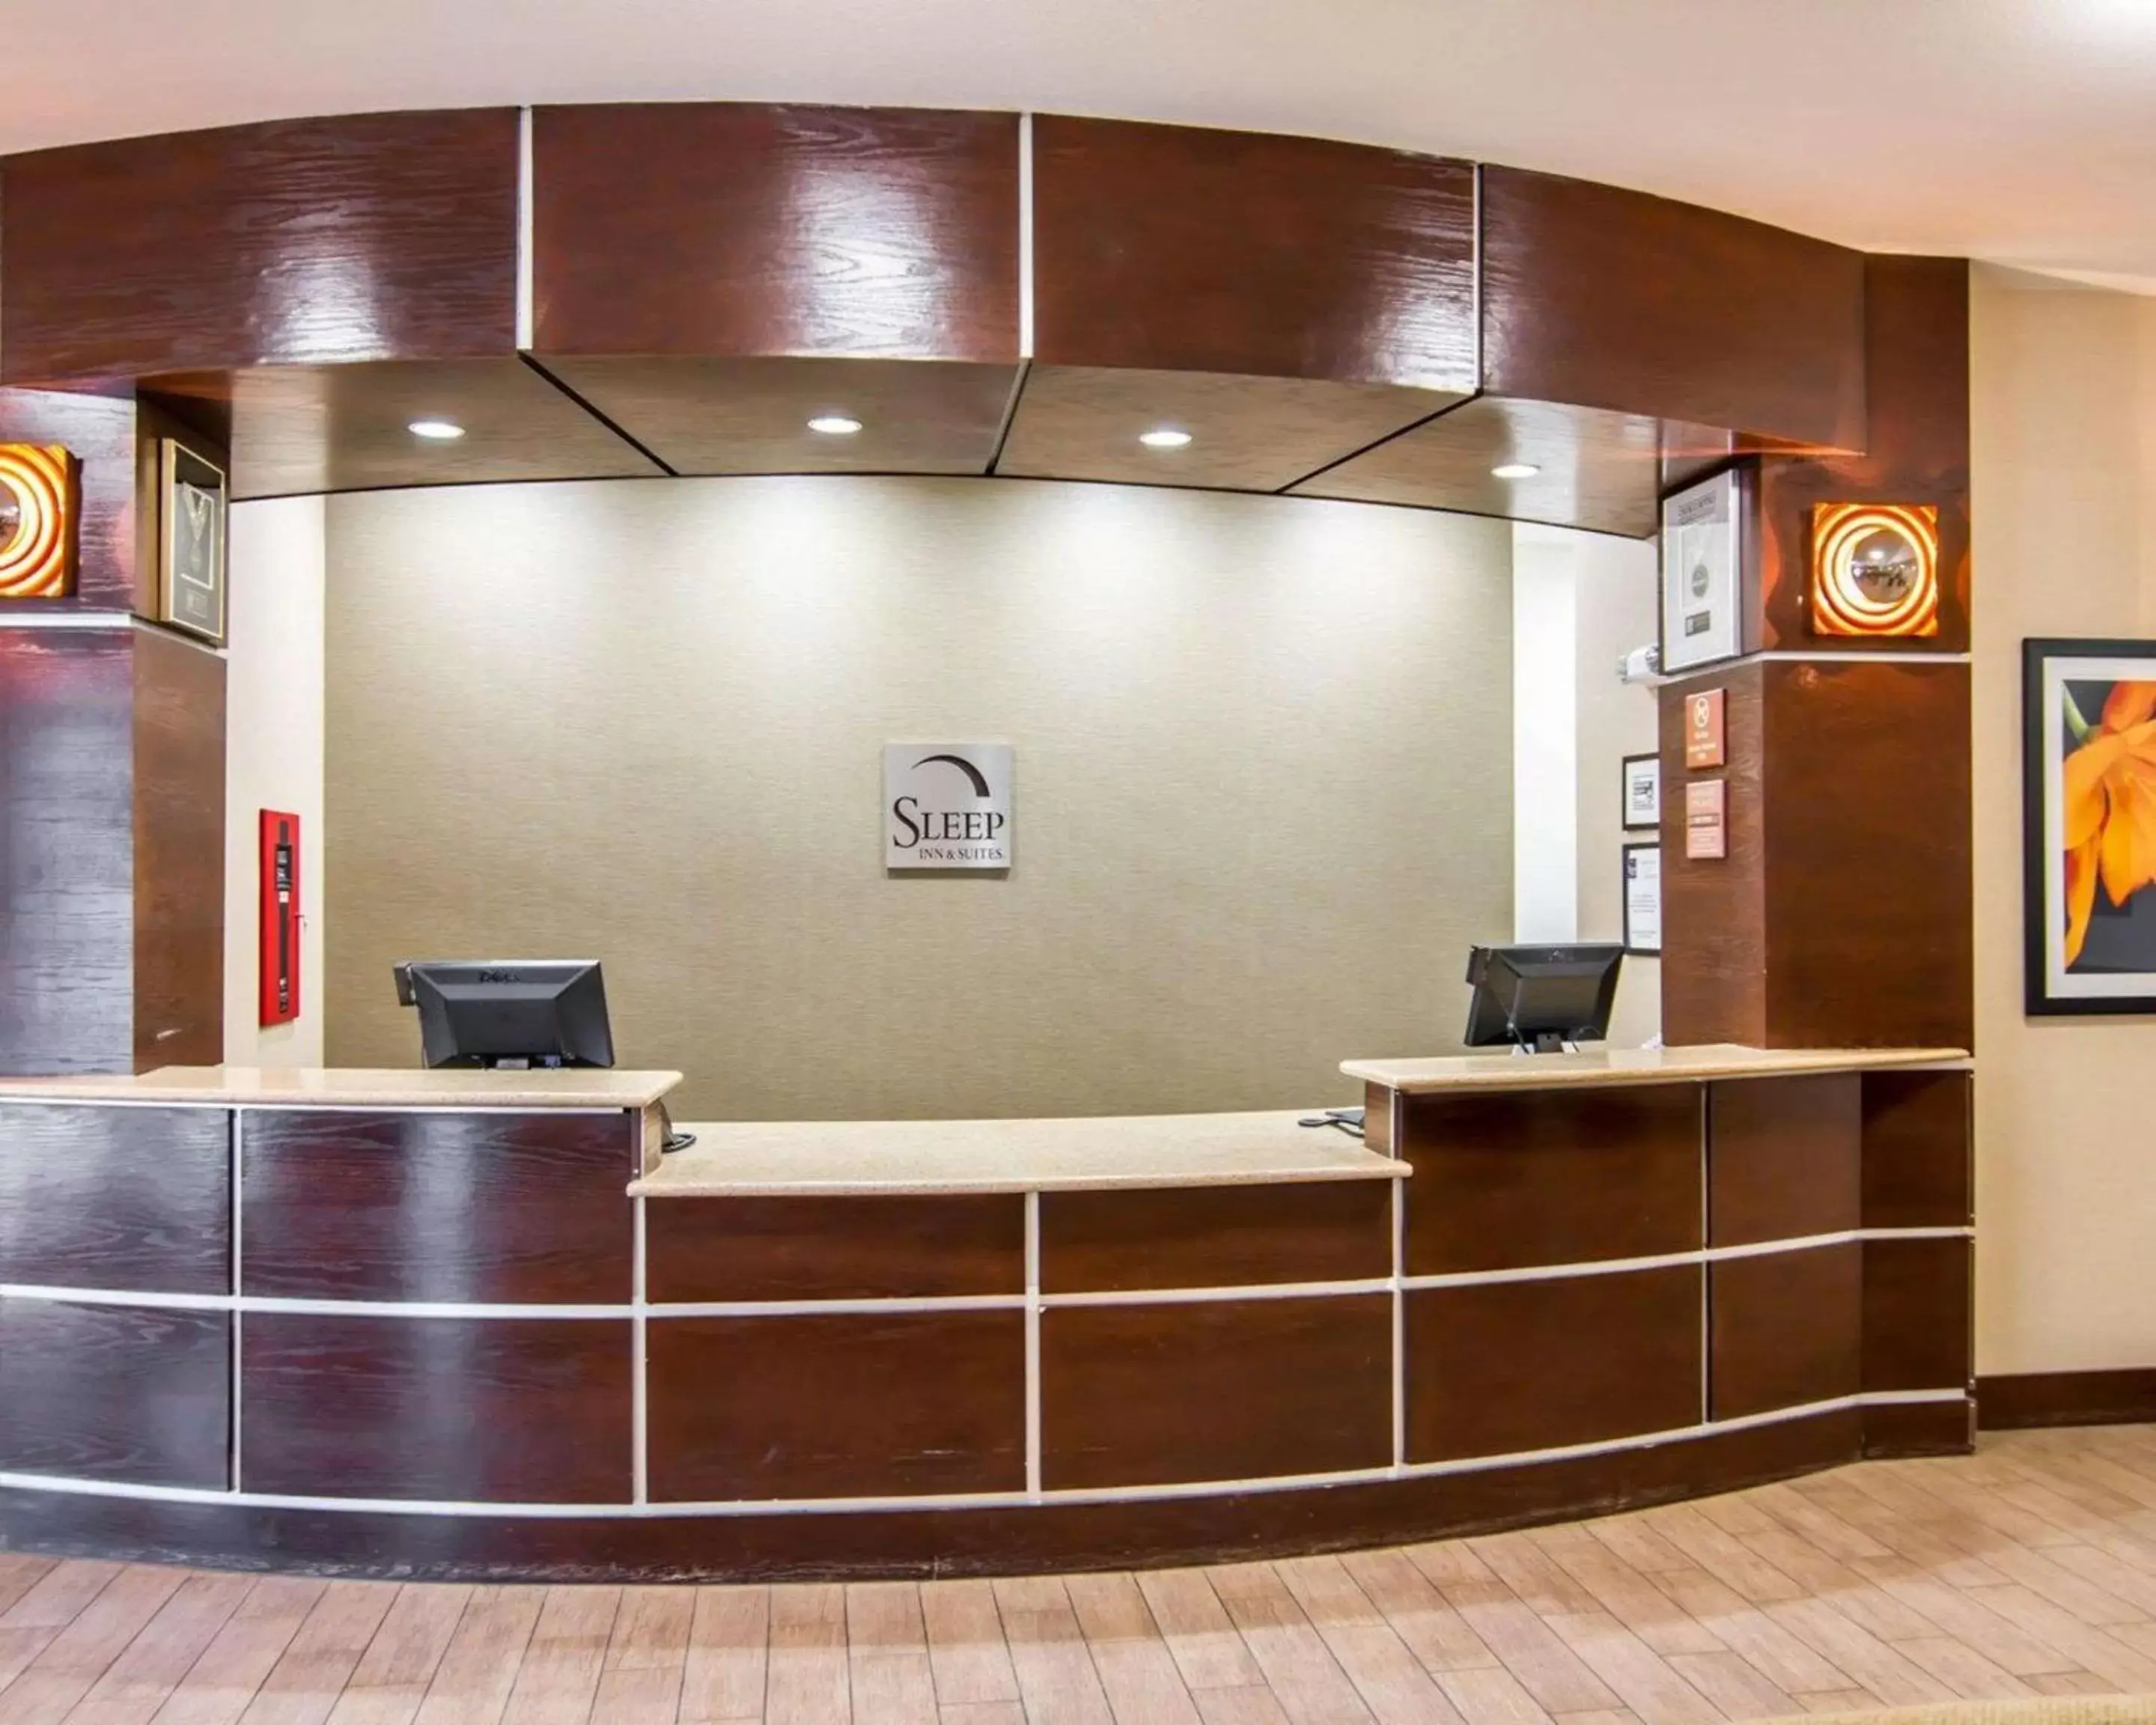 Lobby or reception, Lobby/Reception in Sleep Inn & Suites I-20